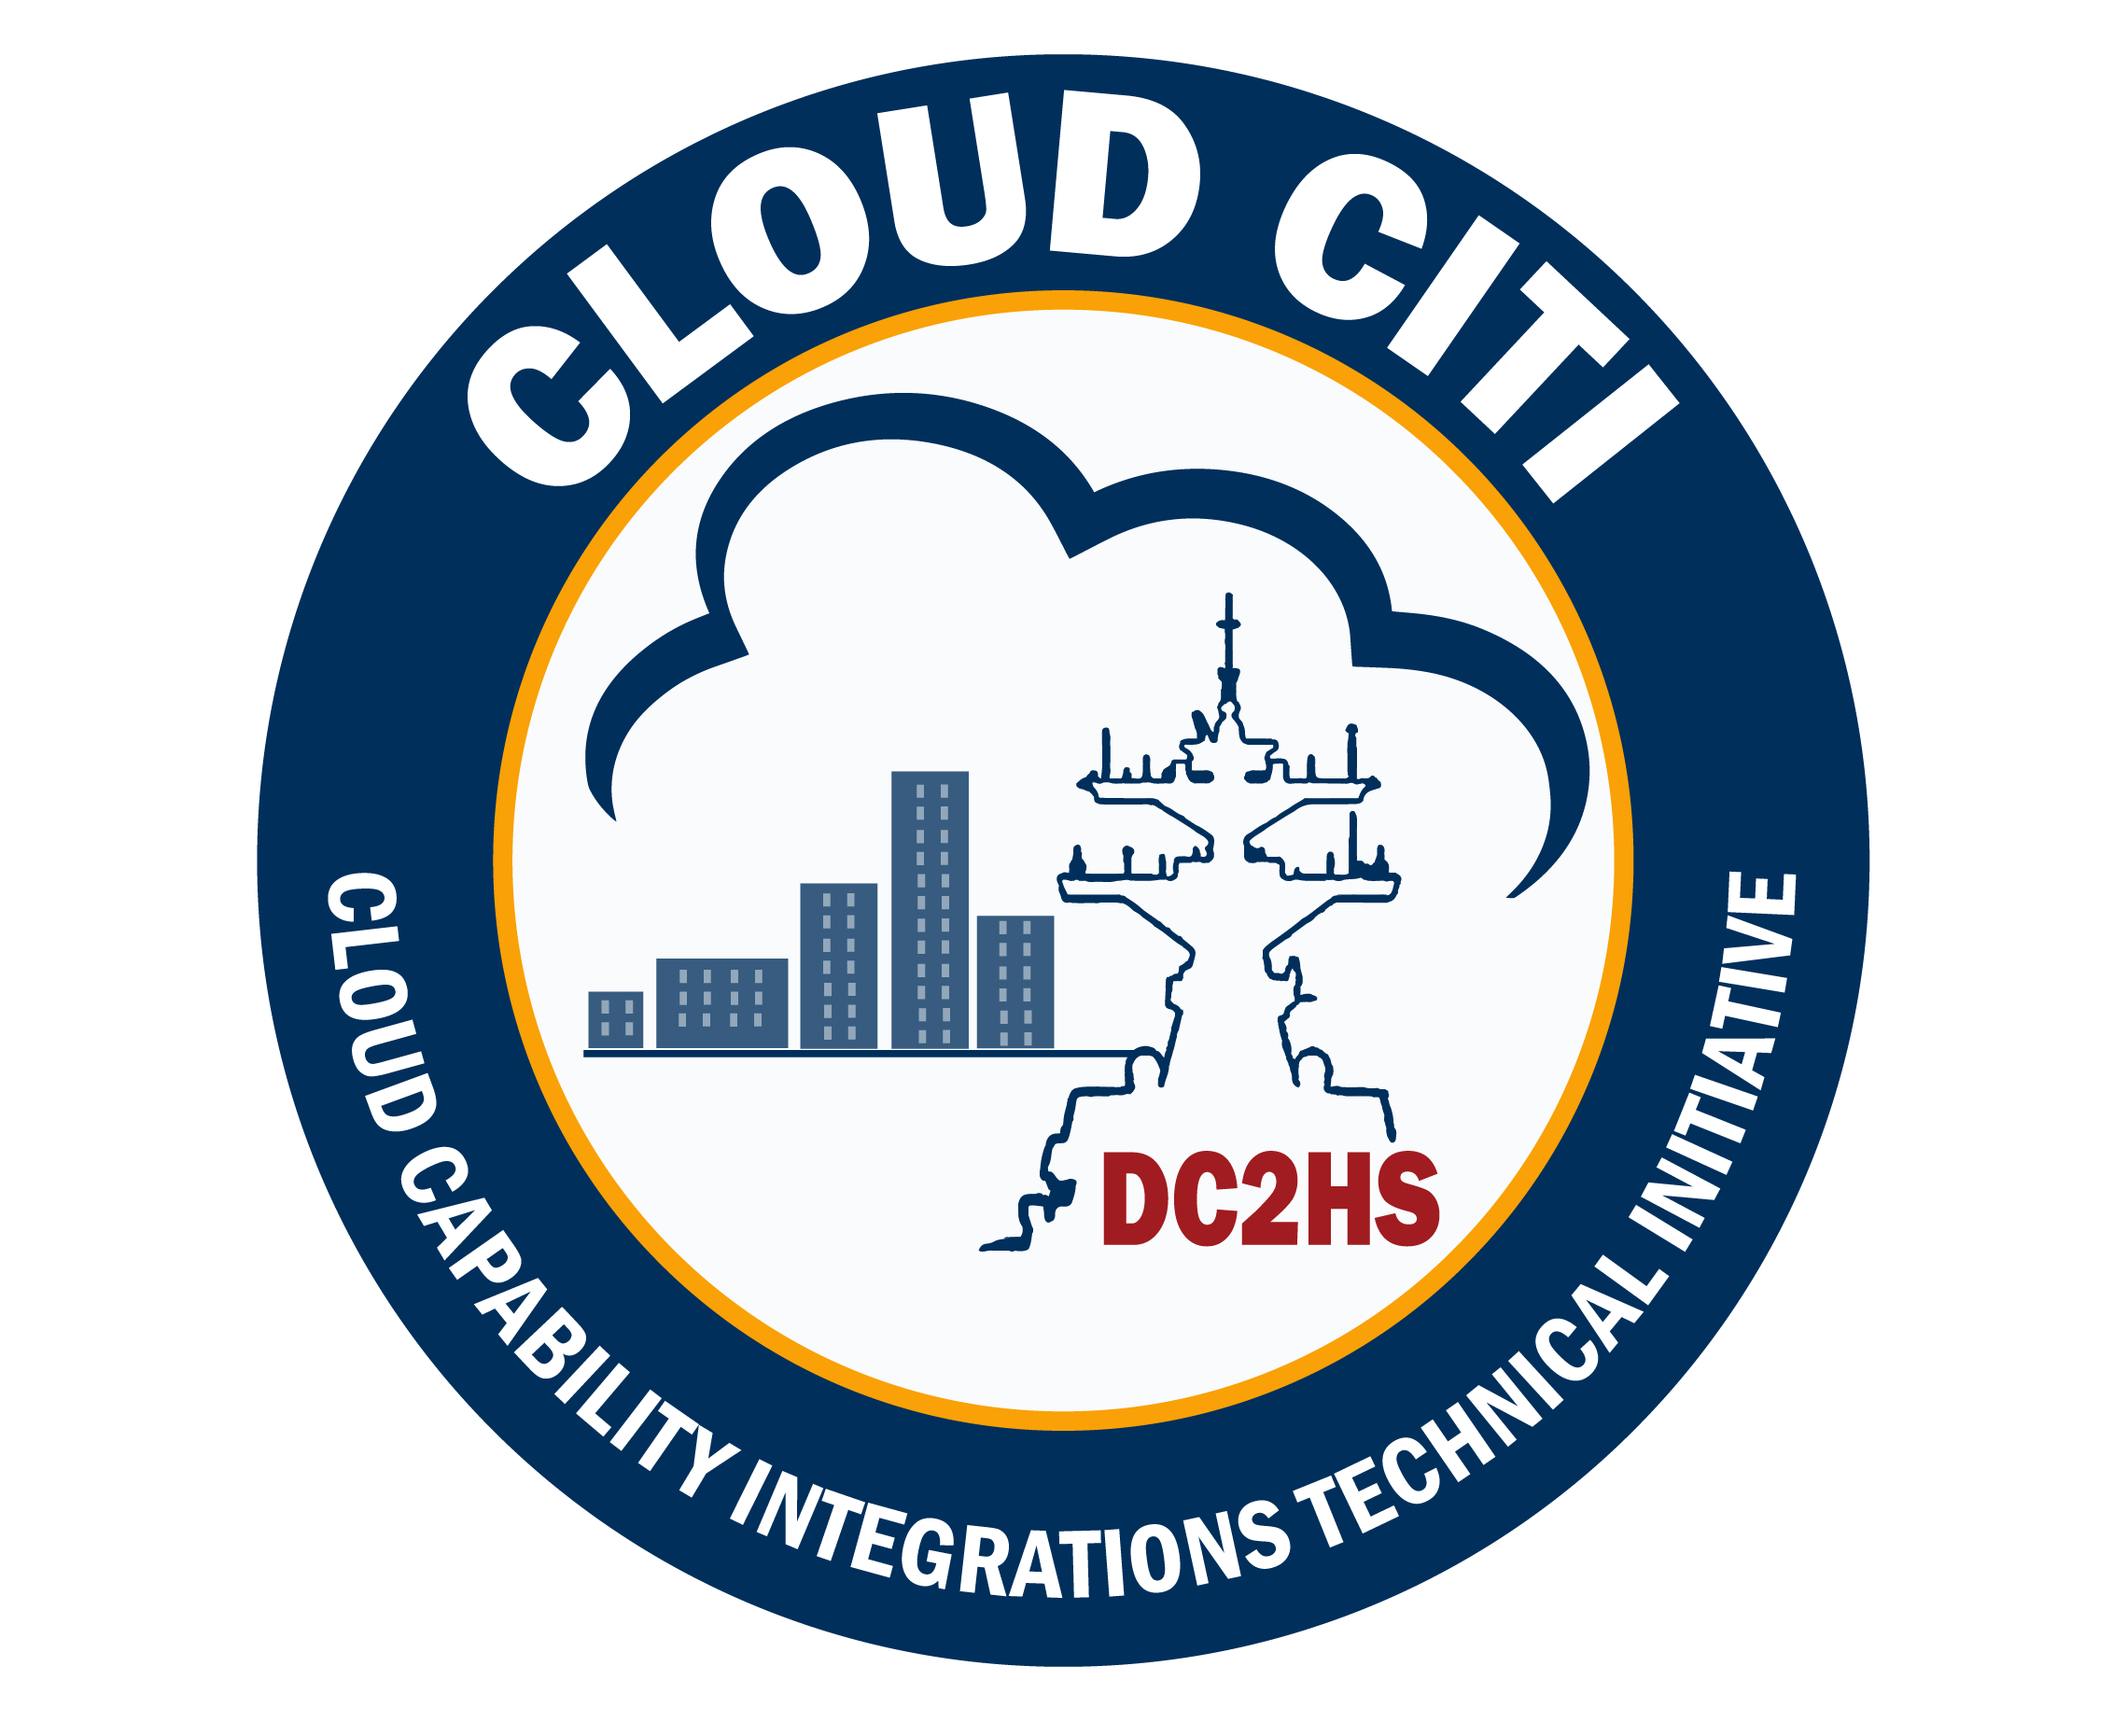 Cloud CITI Logo